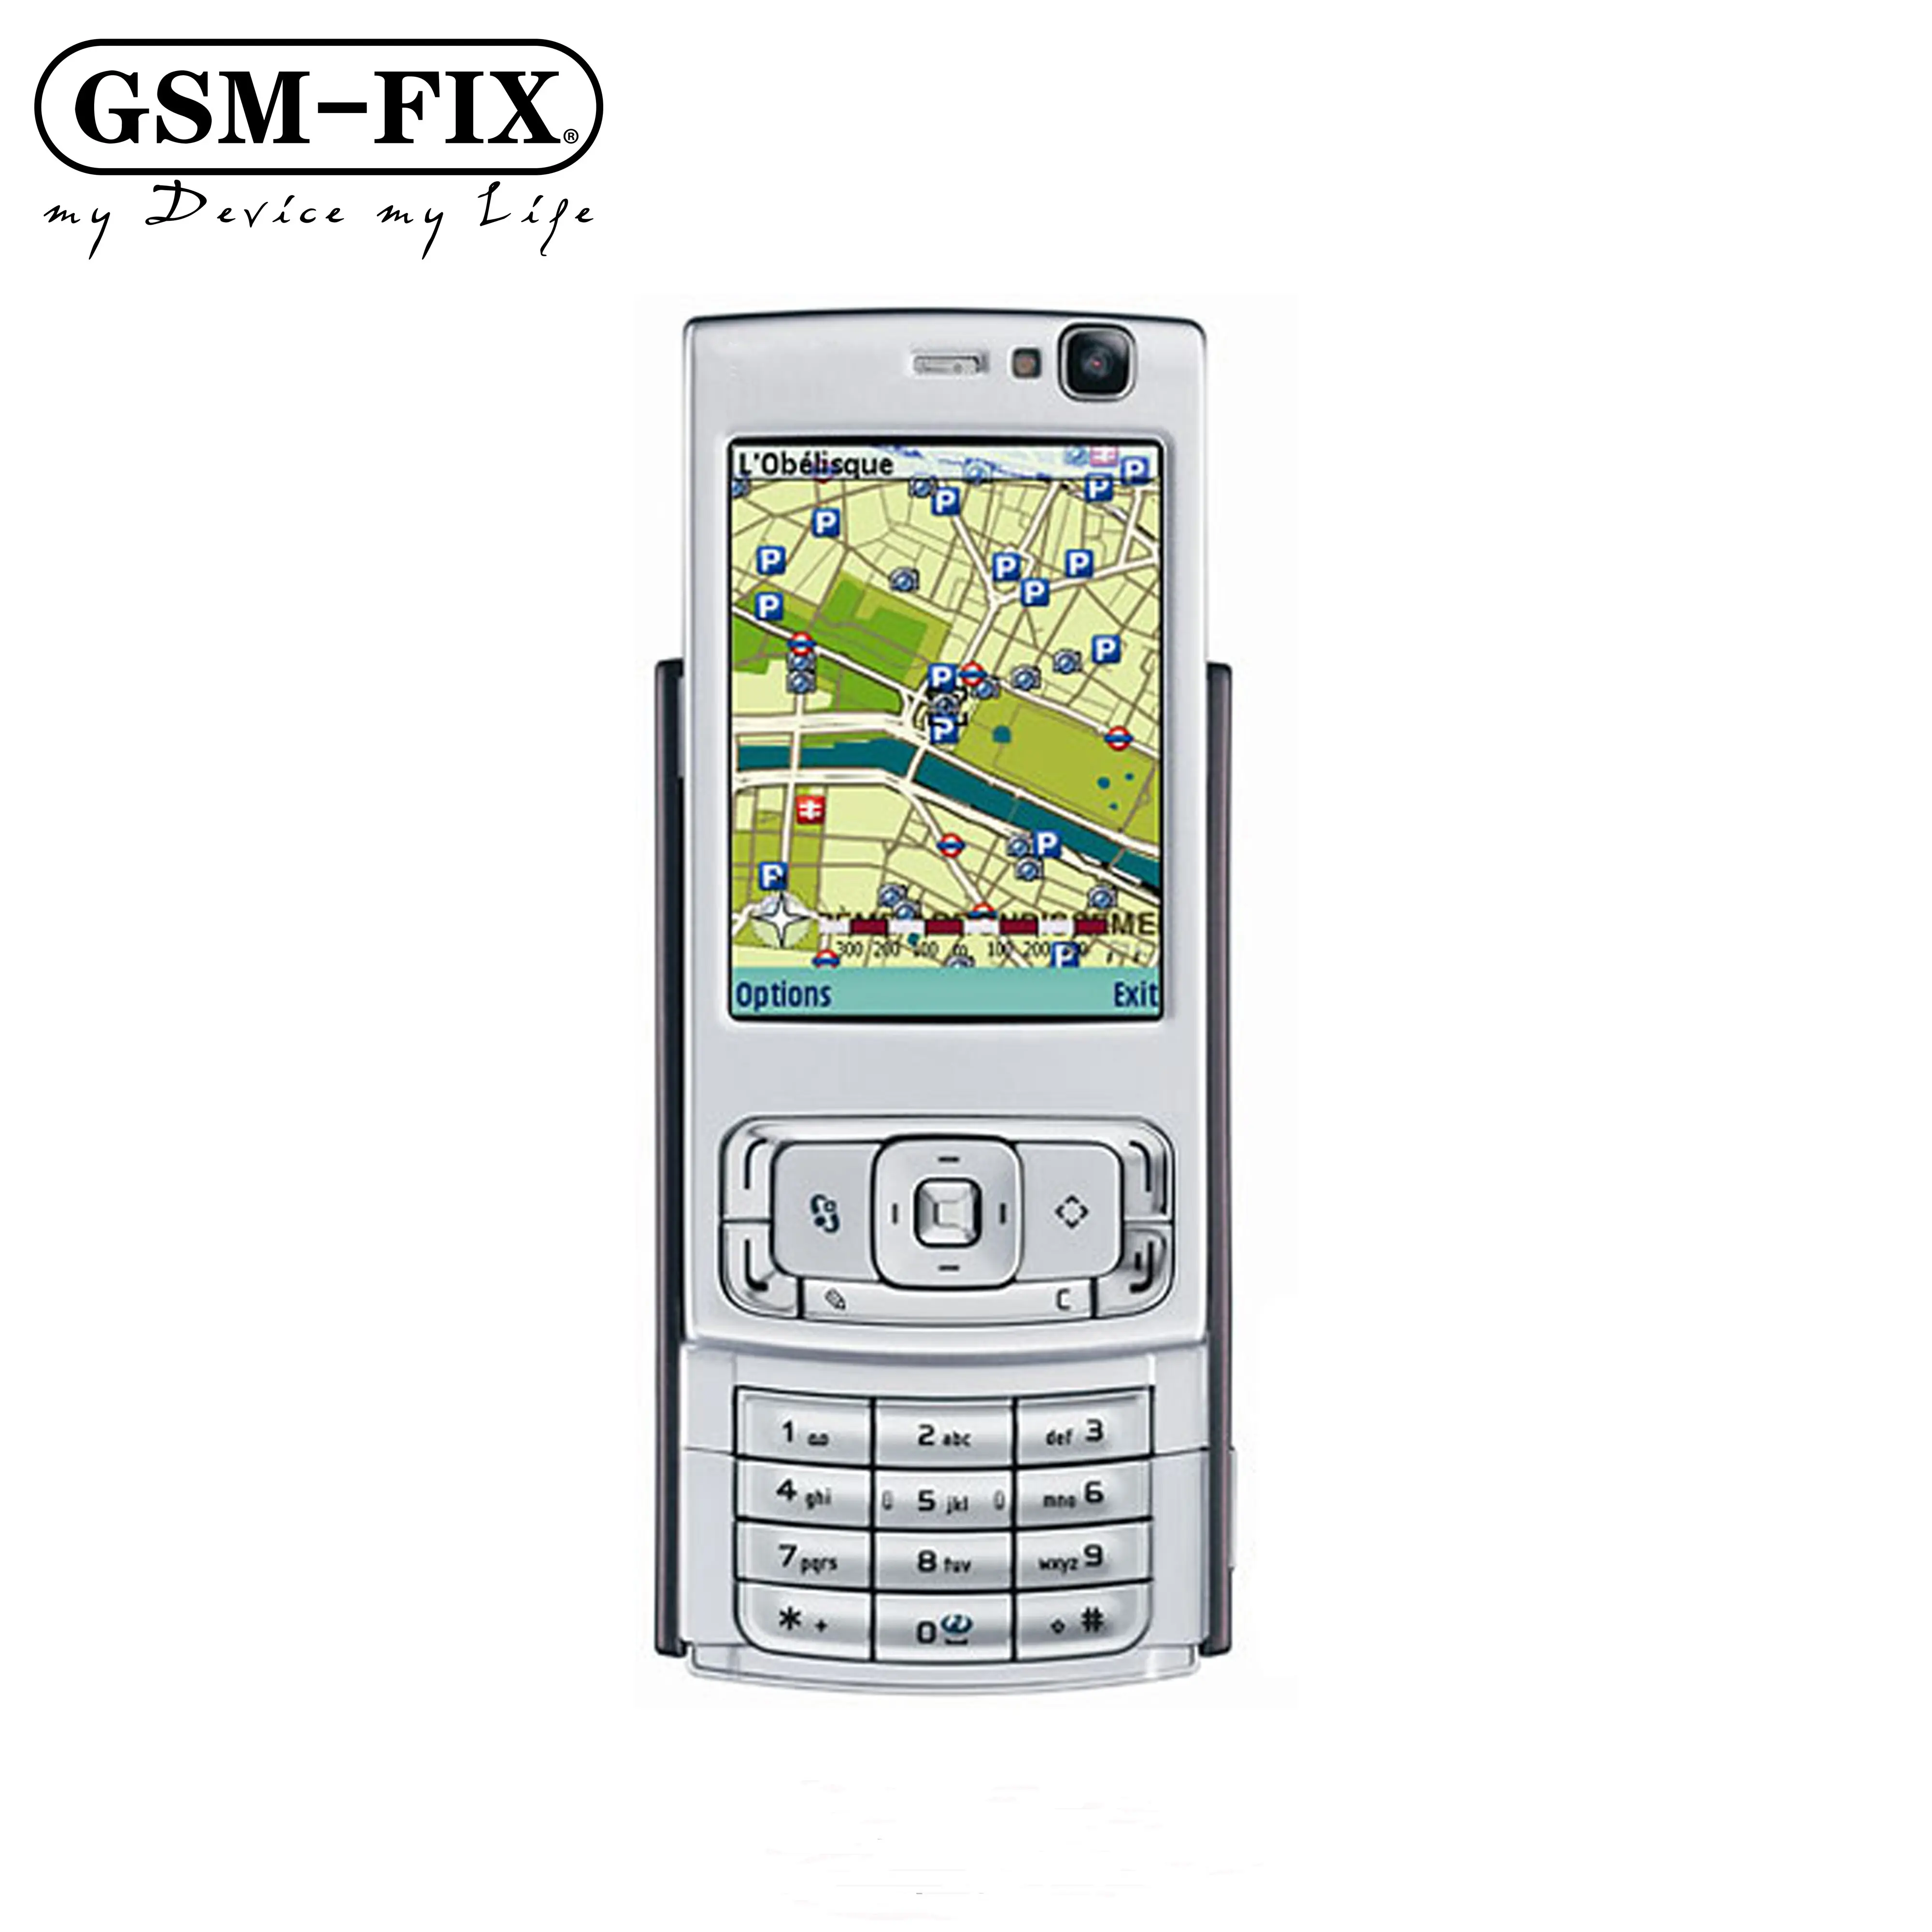 GSM-FIX оригинальные мобильные телефоны 2,8 "8 ГБ внутренней памяти 5MP камера ОС симбиан, 3G, Wi-Fi, разблокированный сотовый телефон для Nokia N95 8 Гб